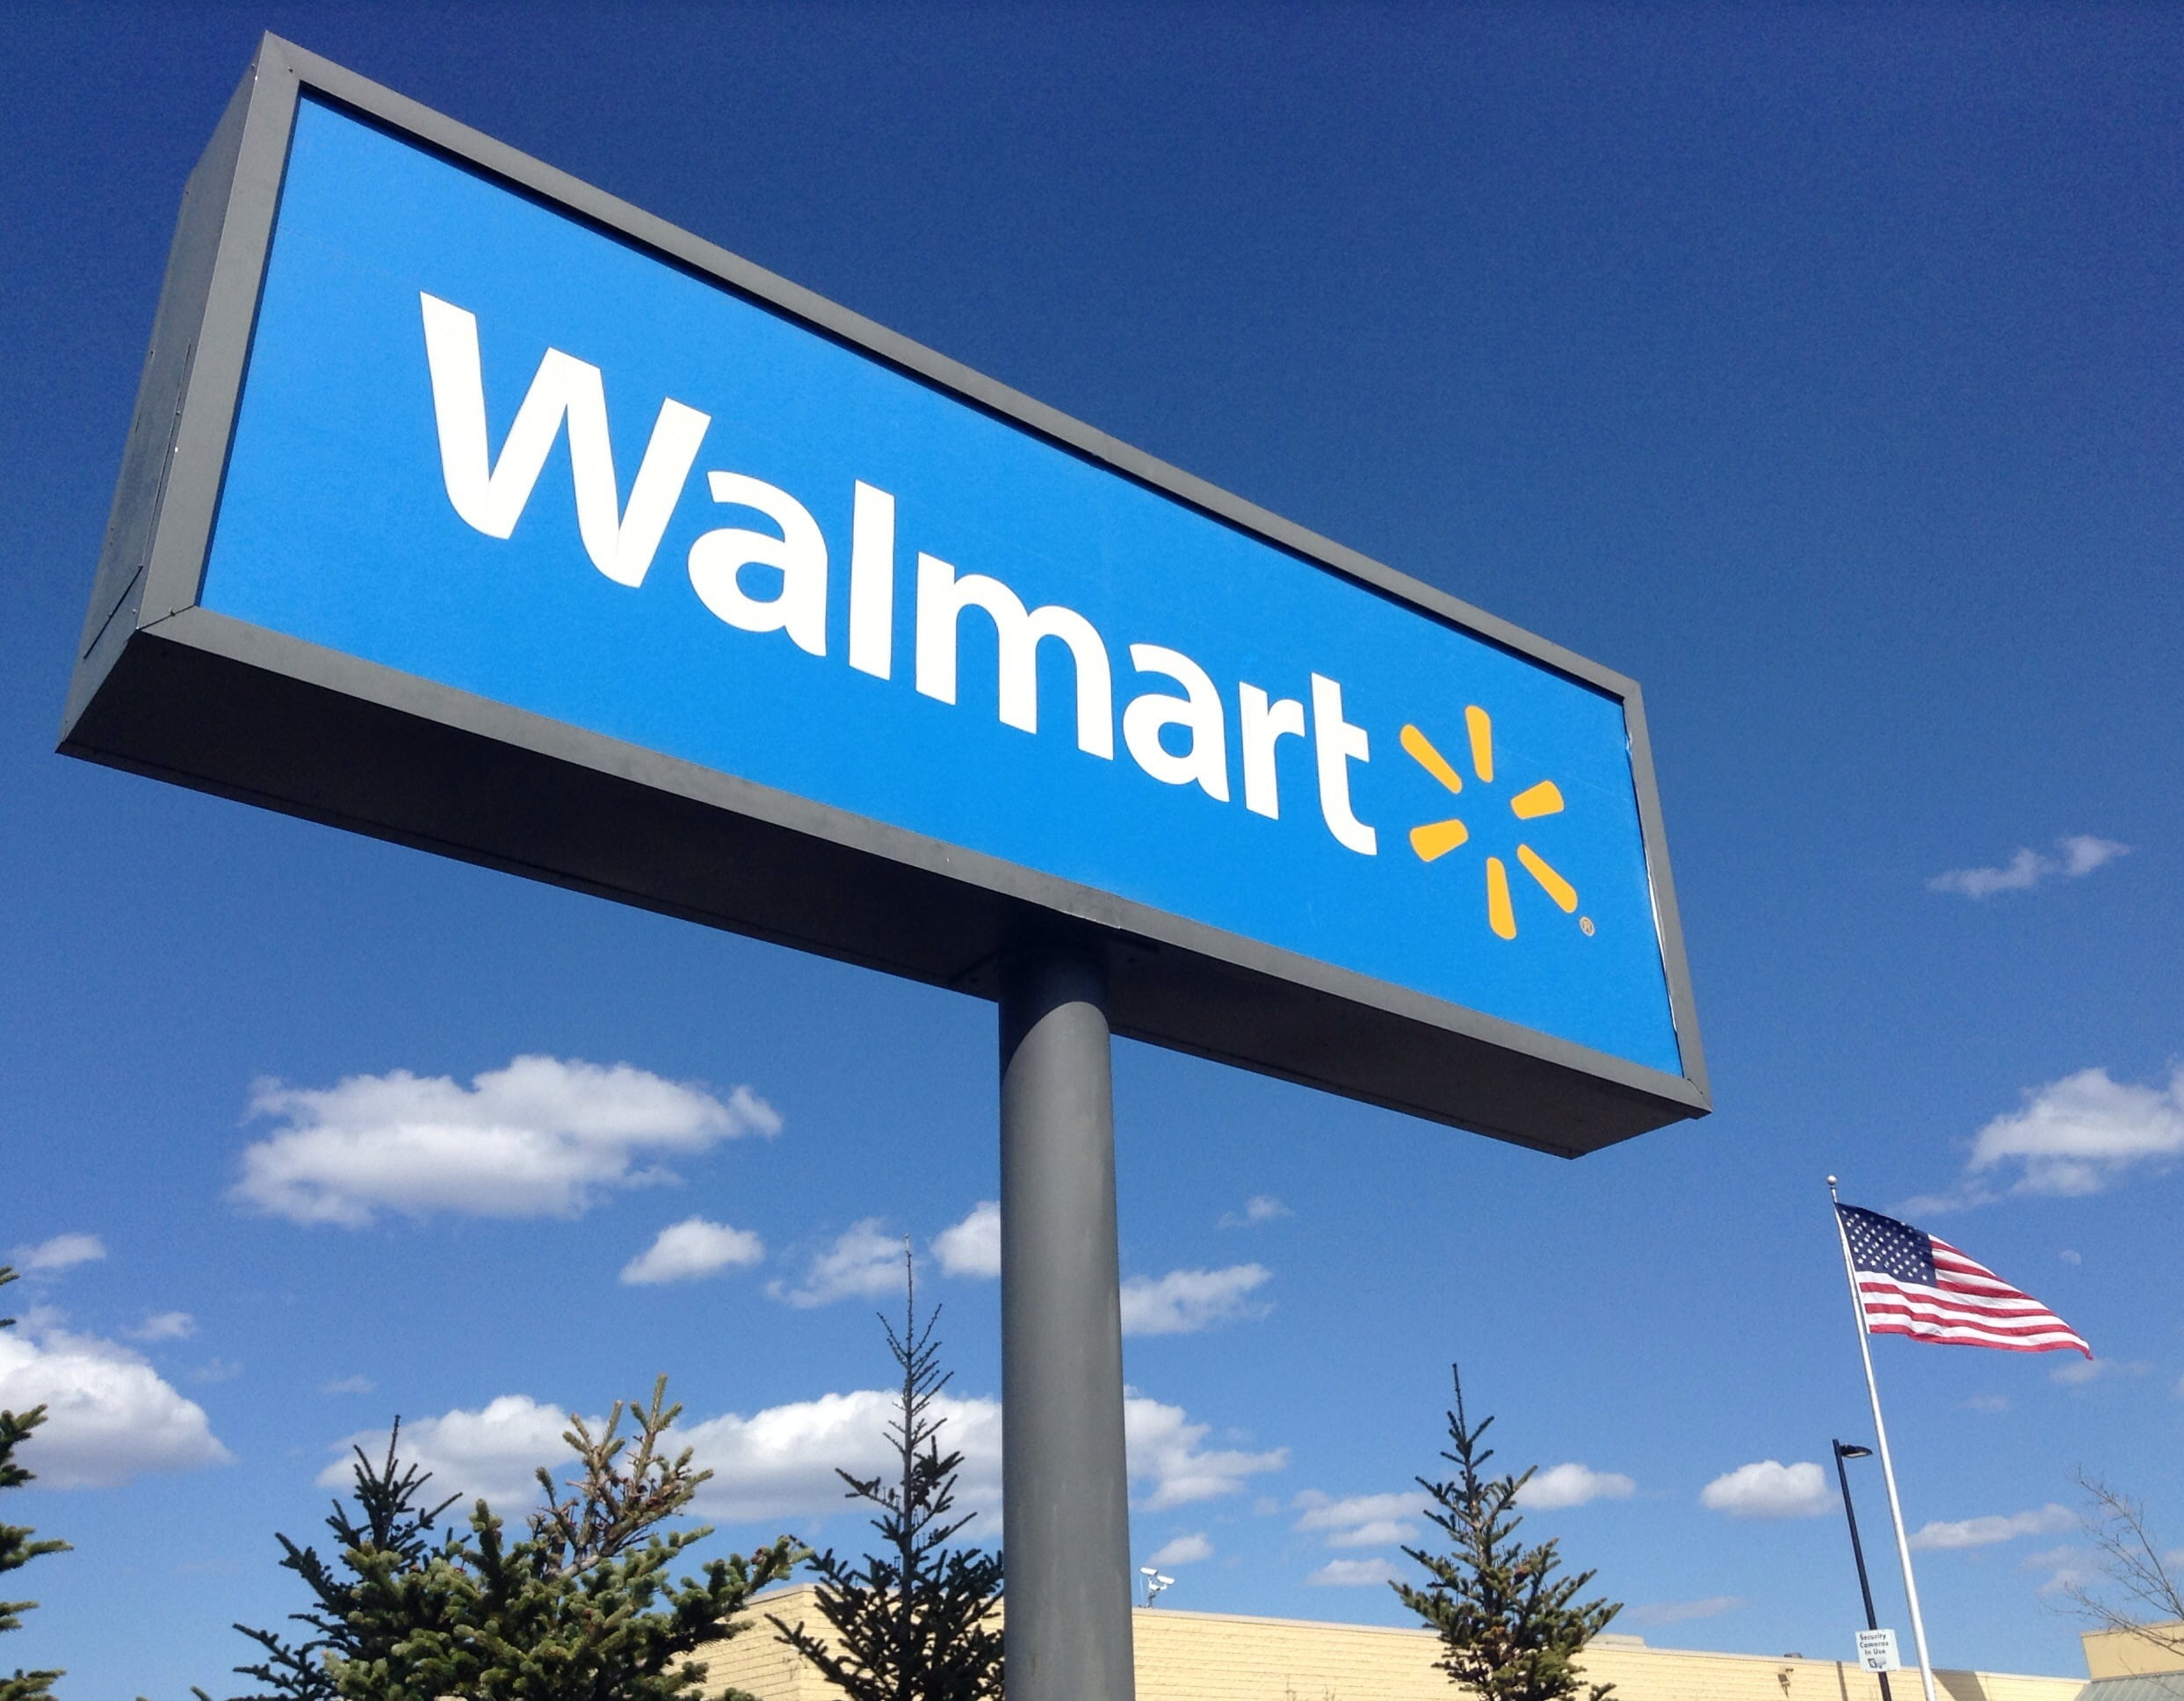 Trabajar En Walmart Requisitos Beneficios Y Consejos Para Aplicar Empleos Direct